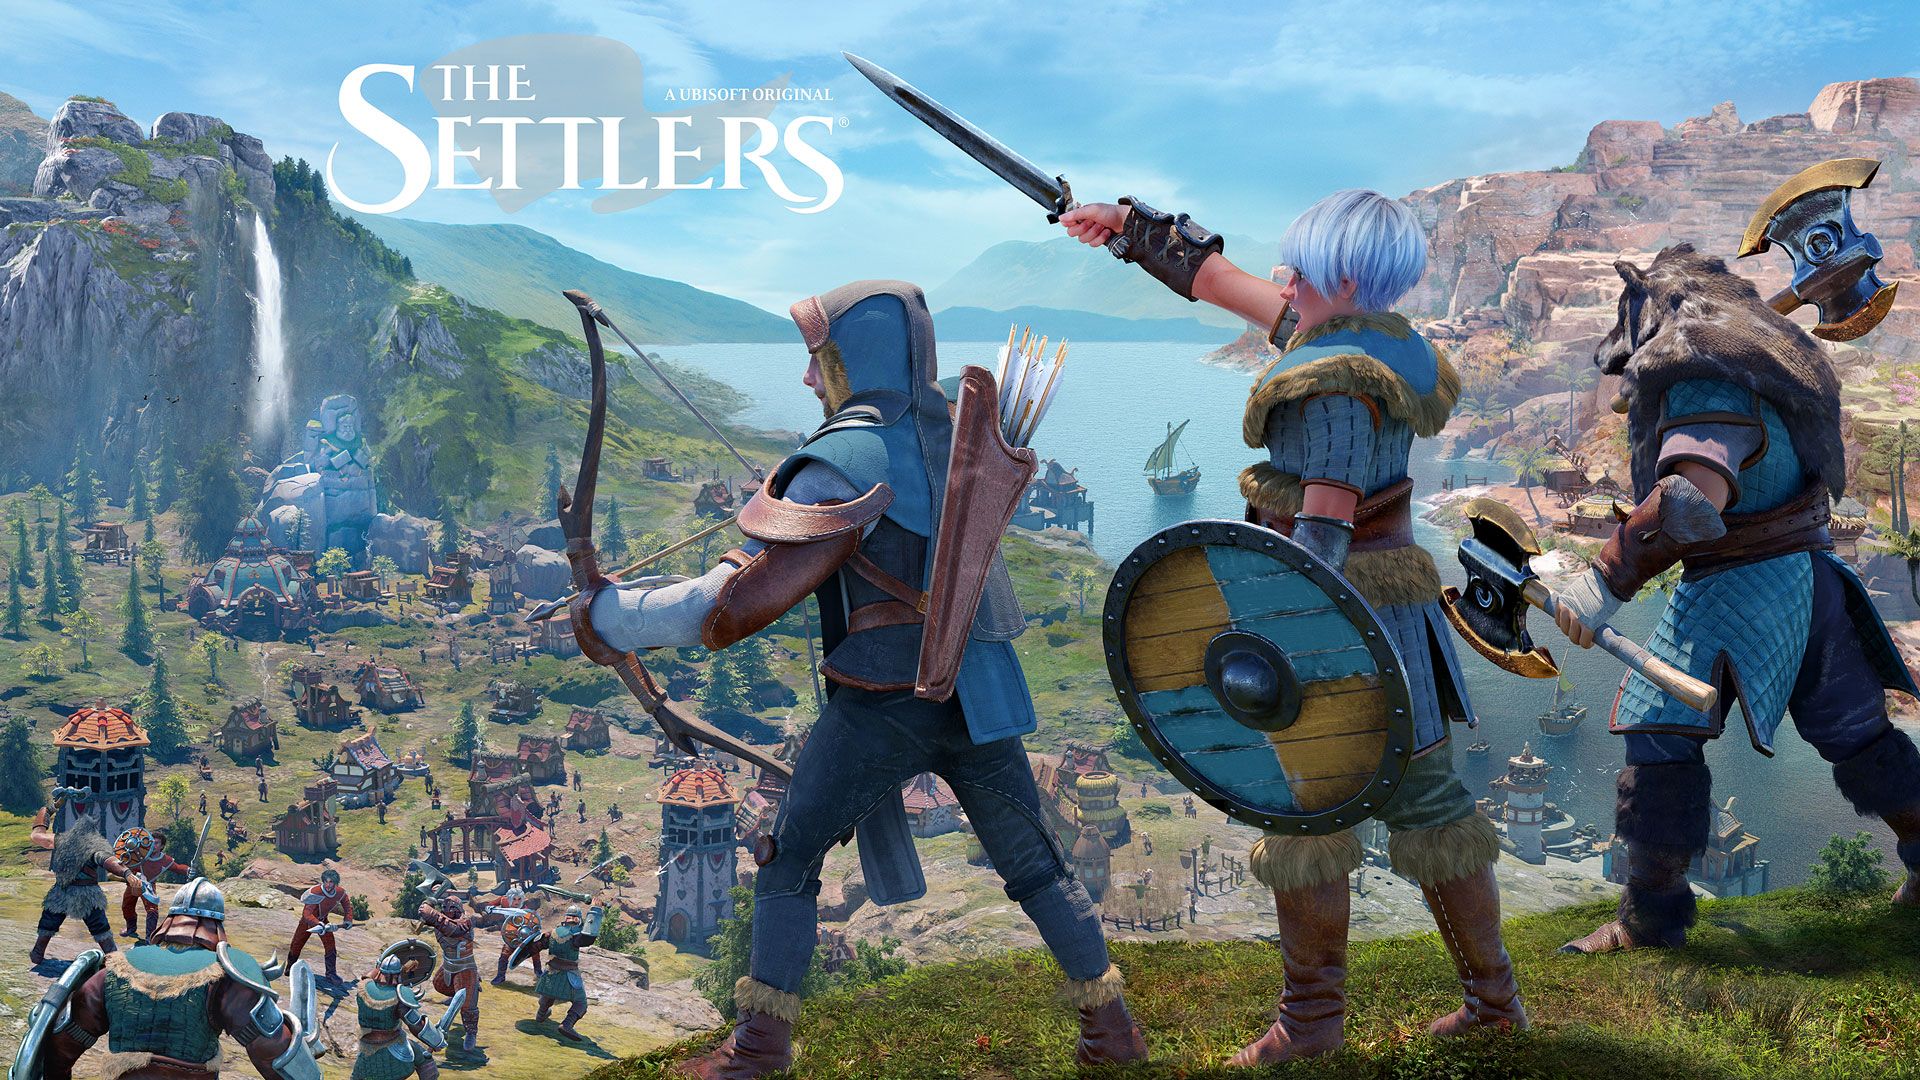 تریلر جدید بازی The Settlers یوبیسافت با محوریت زمان عرضه